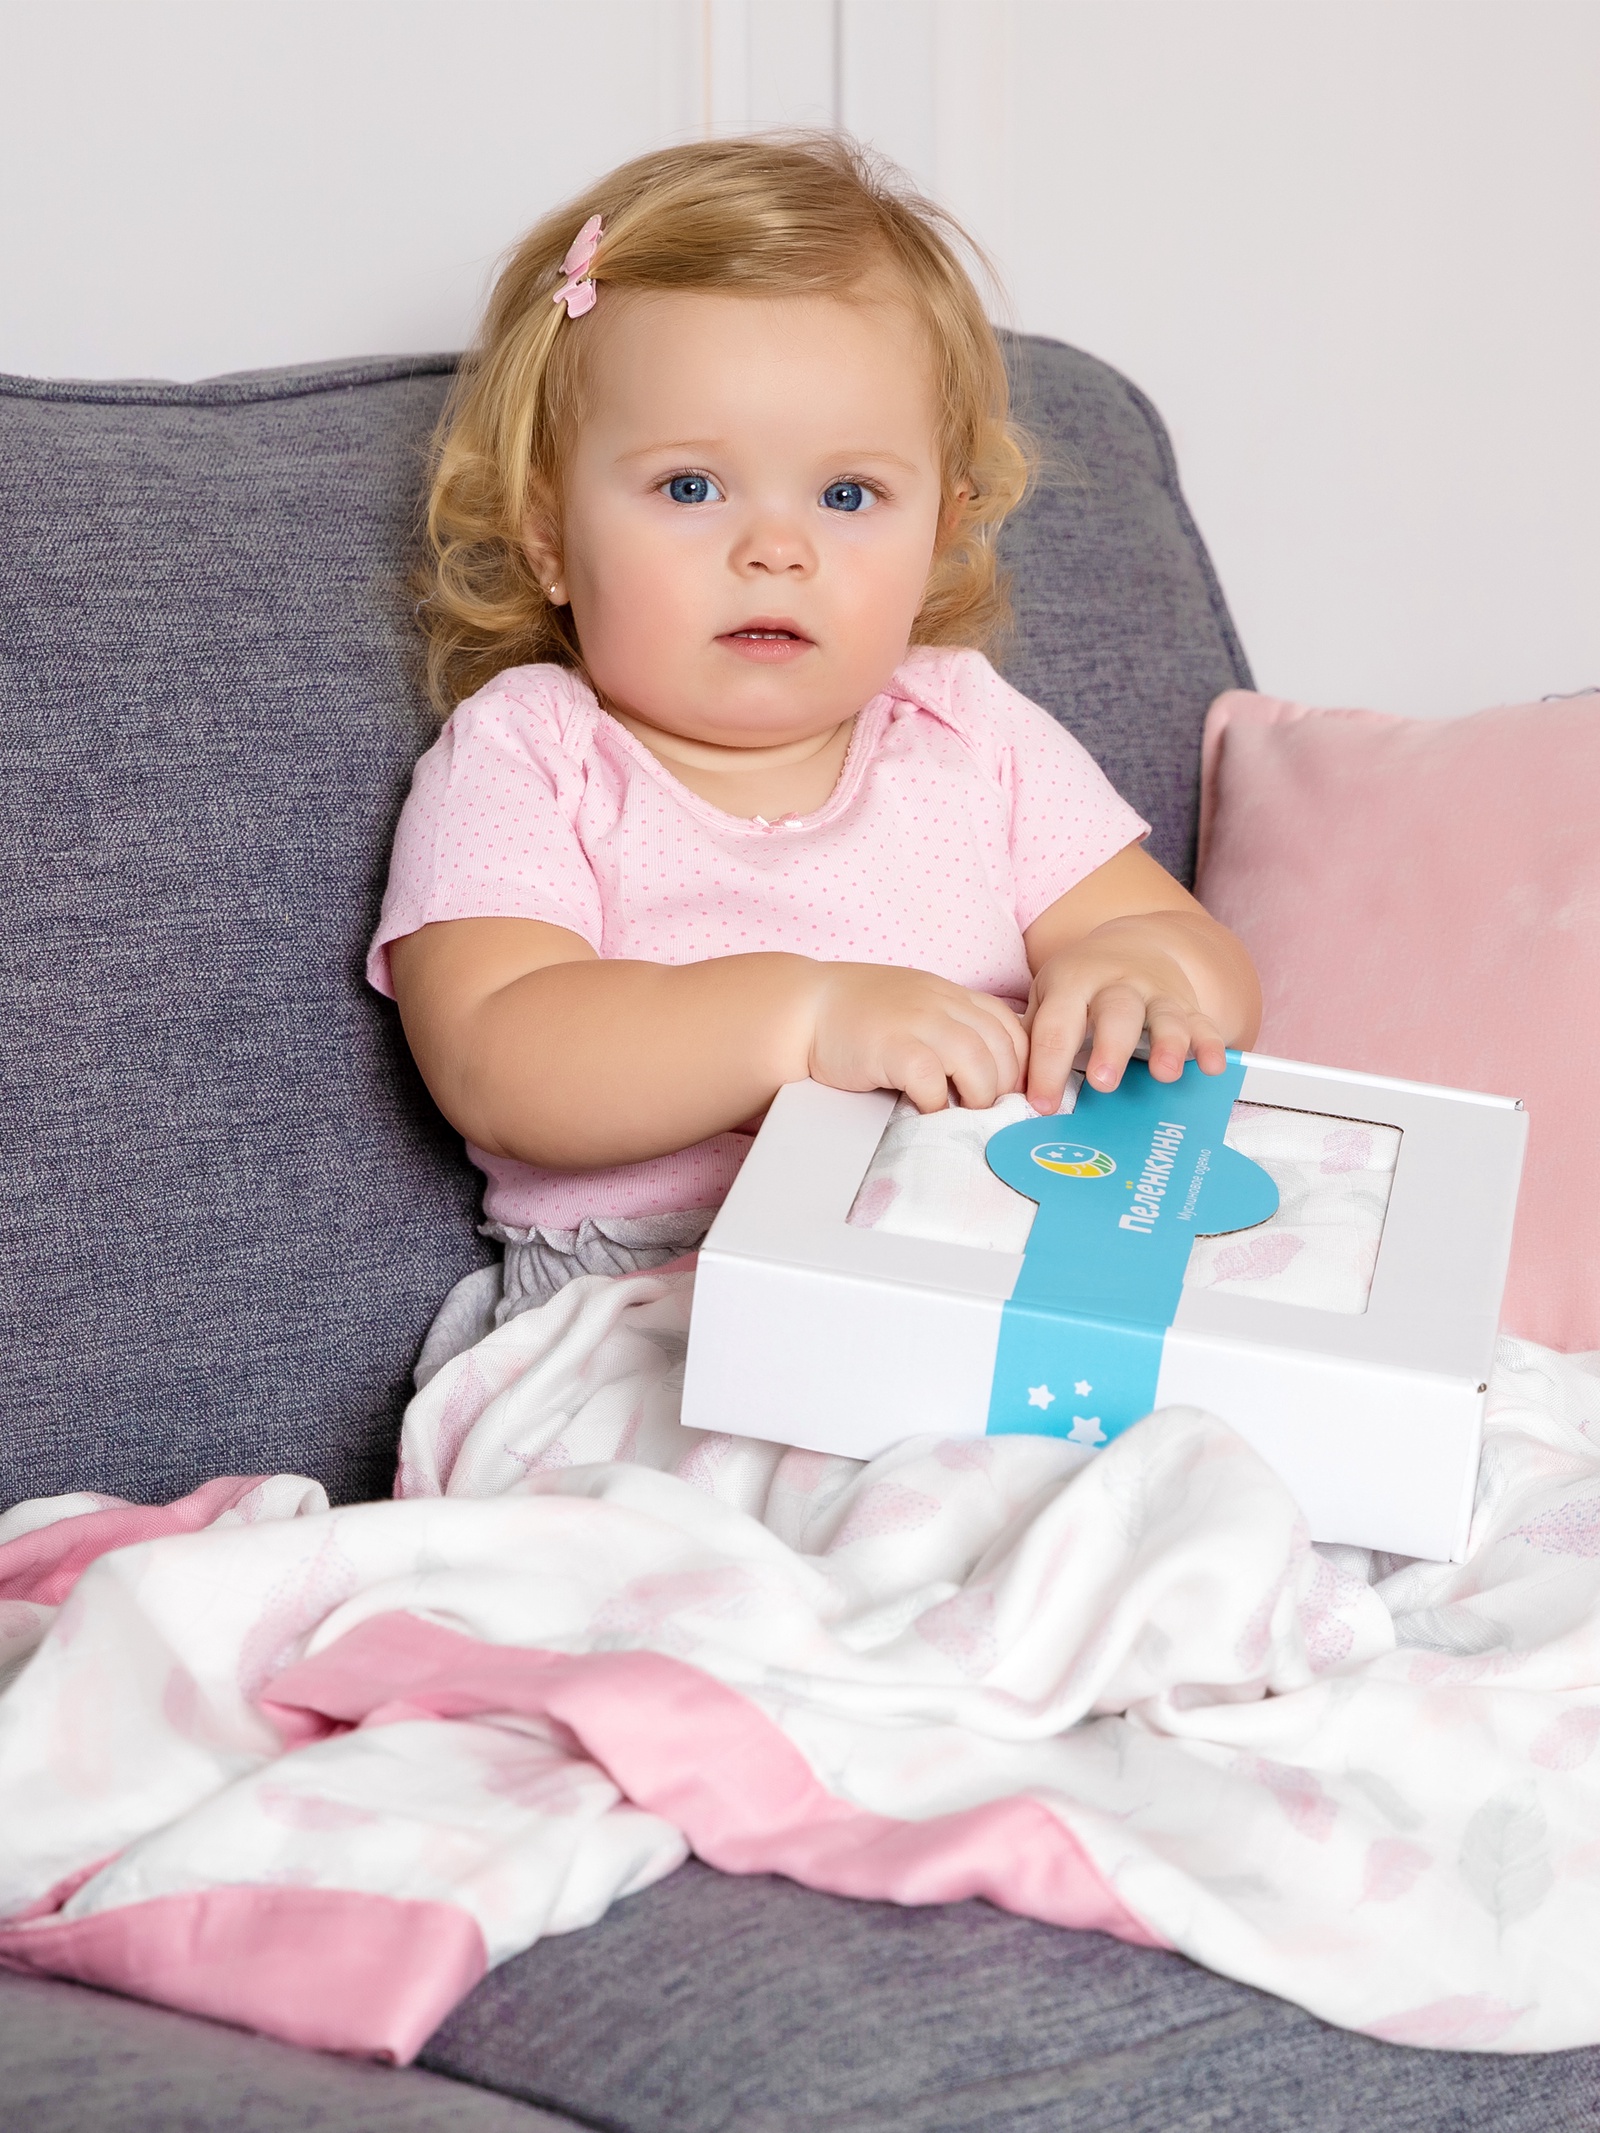 фото Одеяло детское Пелёнкины Муслиновое одеяло Розовые перышки